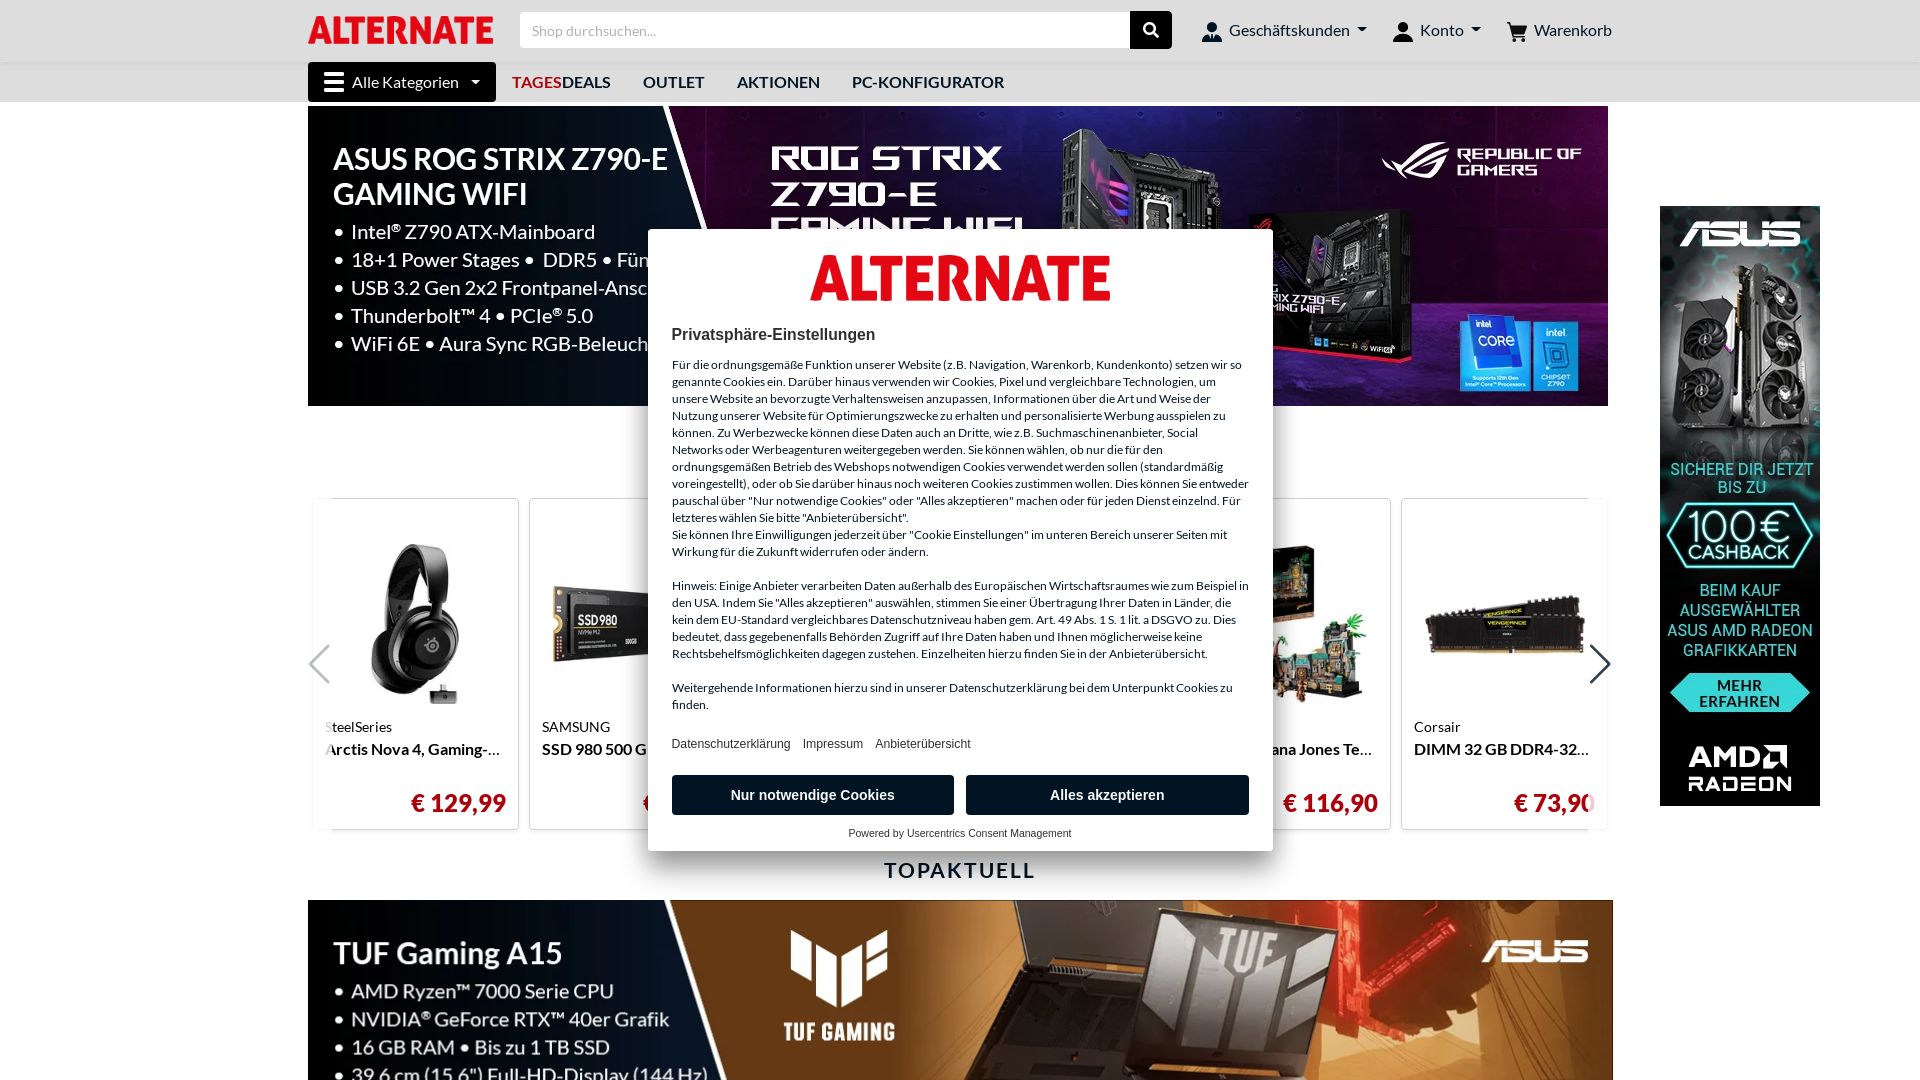 Website status alternate.de is   ONLINE